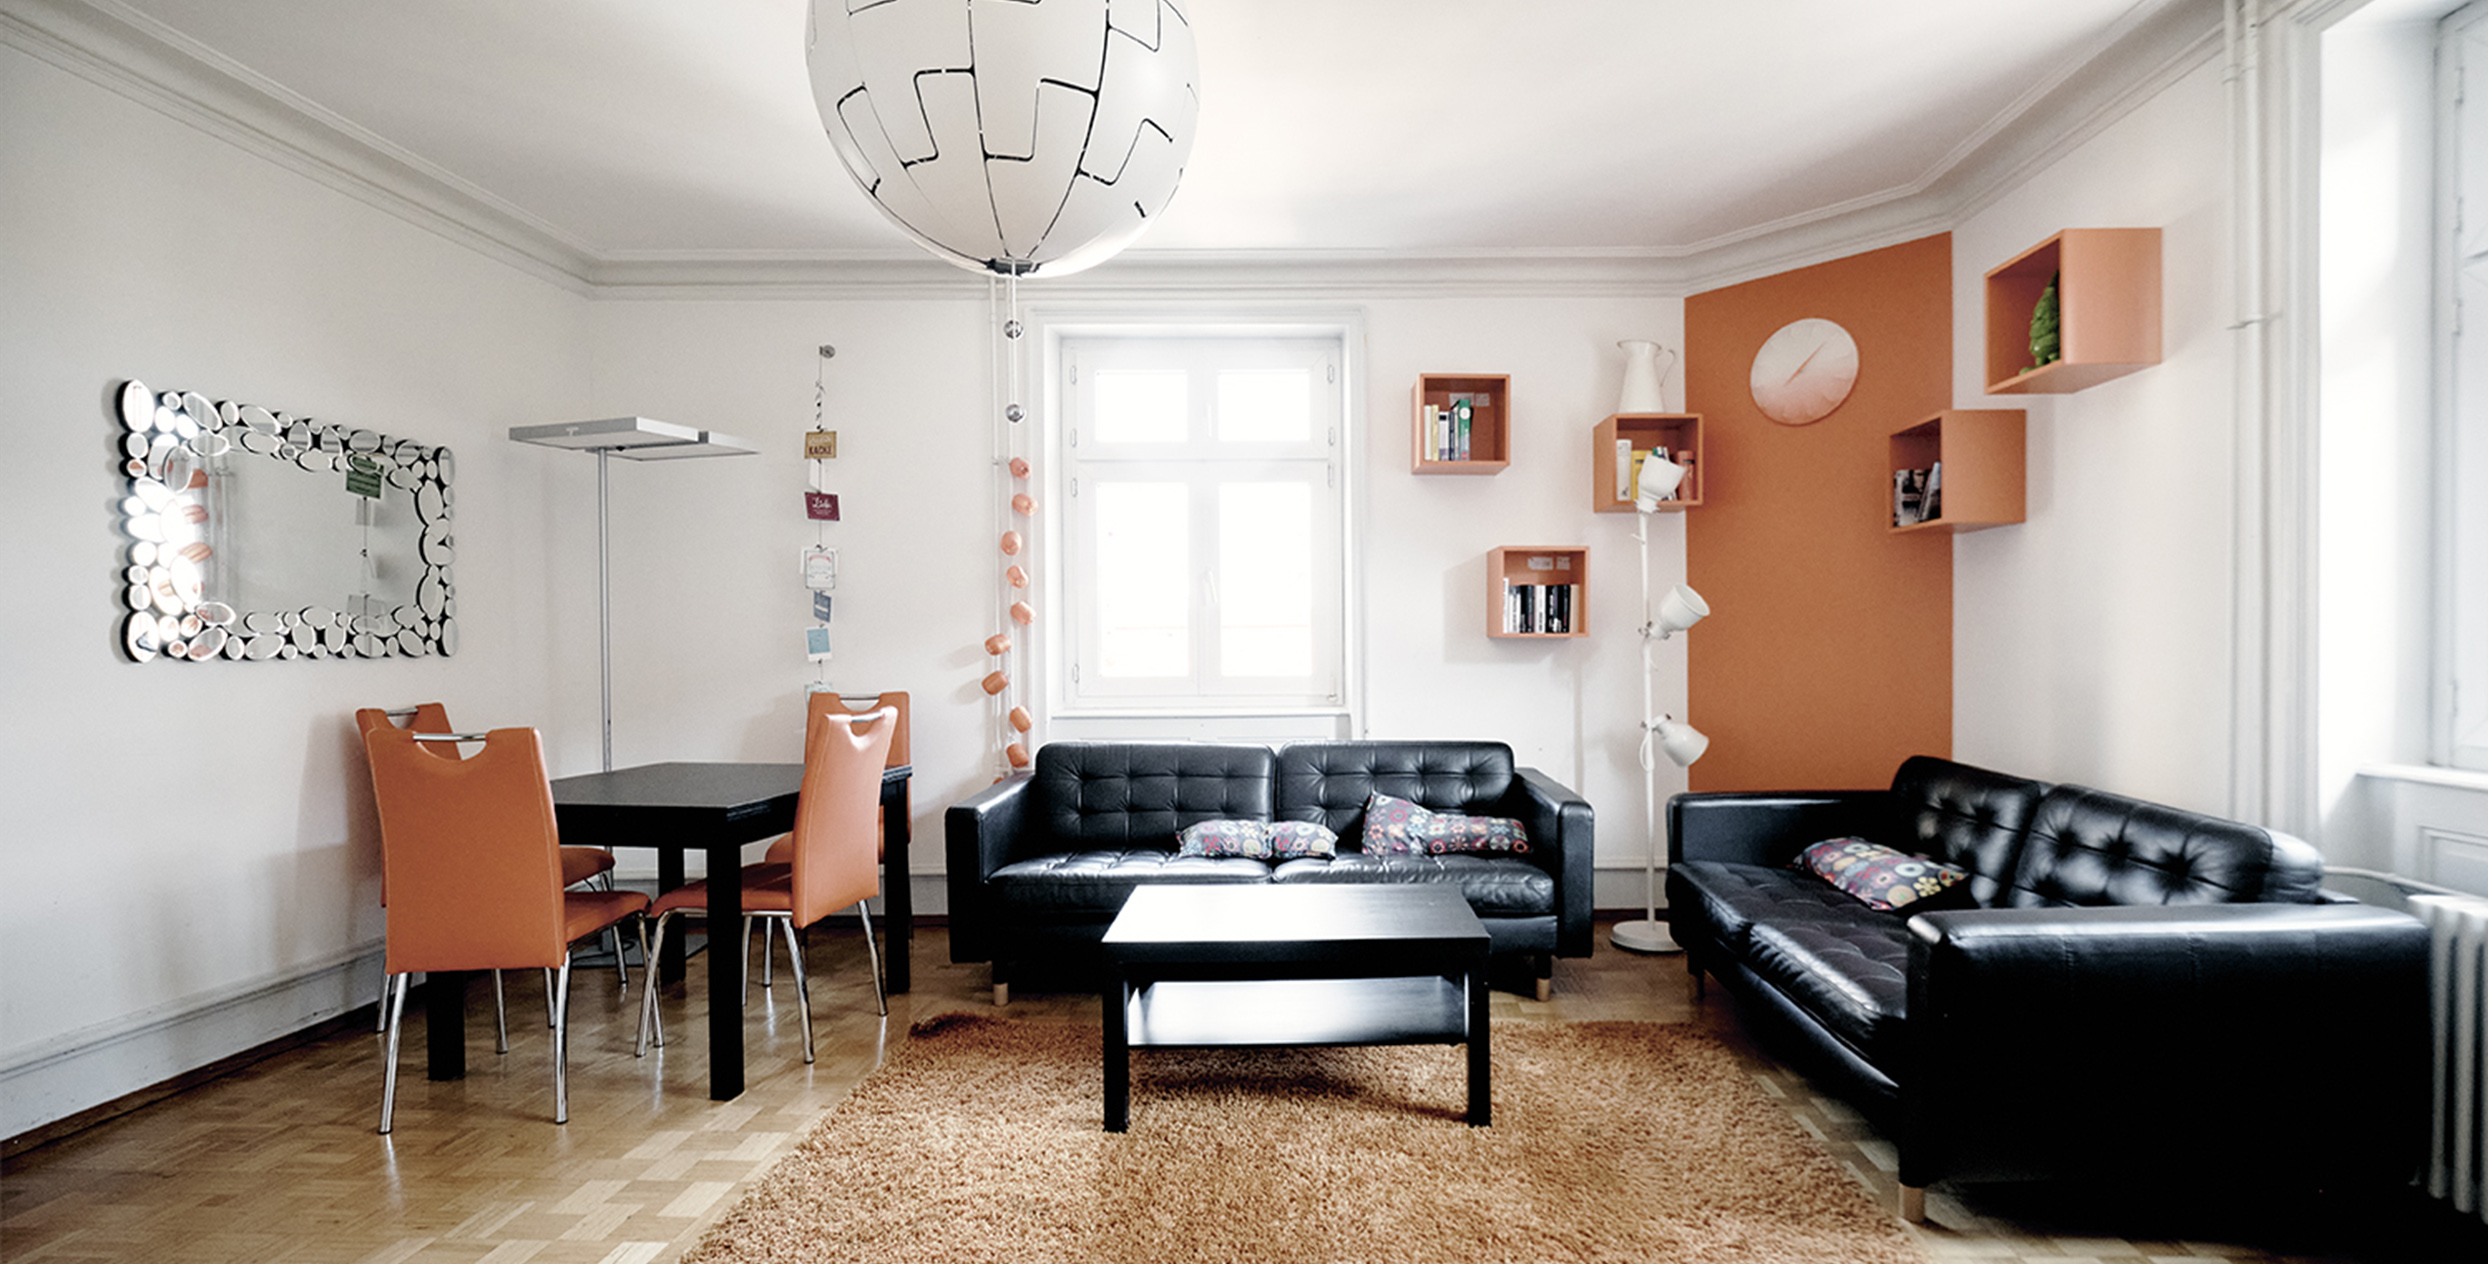 Ein helles Wohnzimmer mit orangen Akzenten